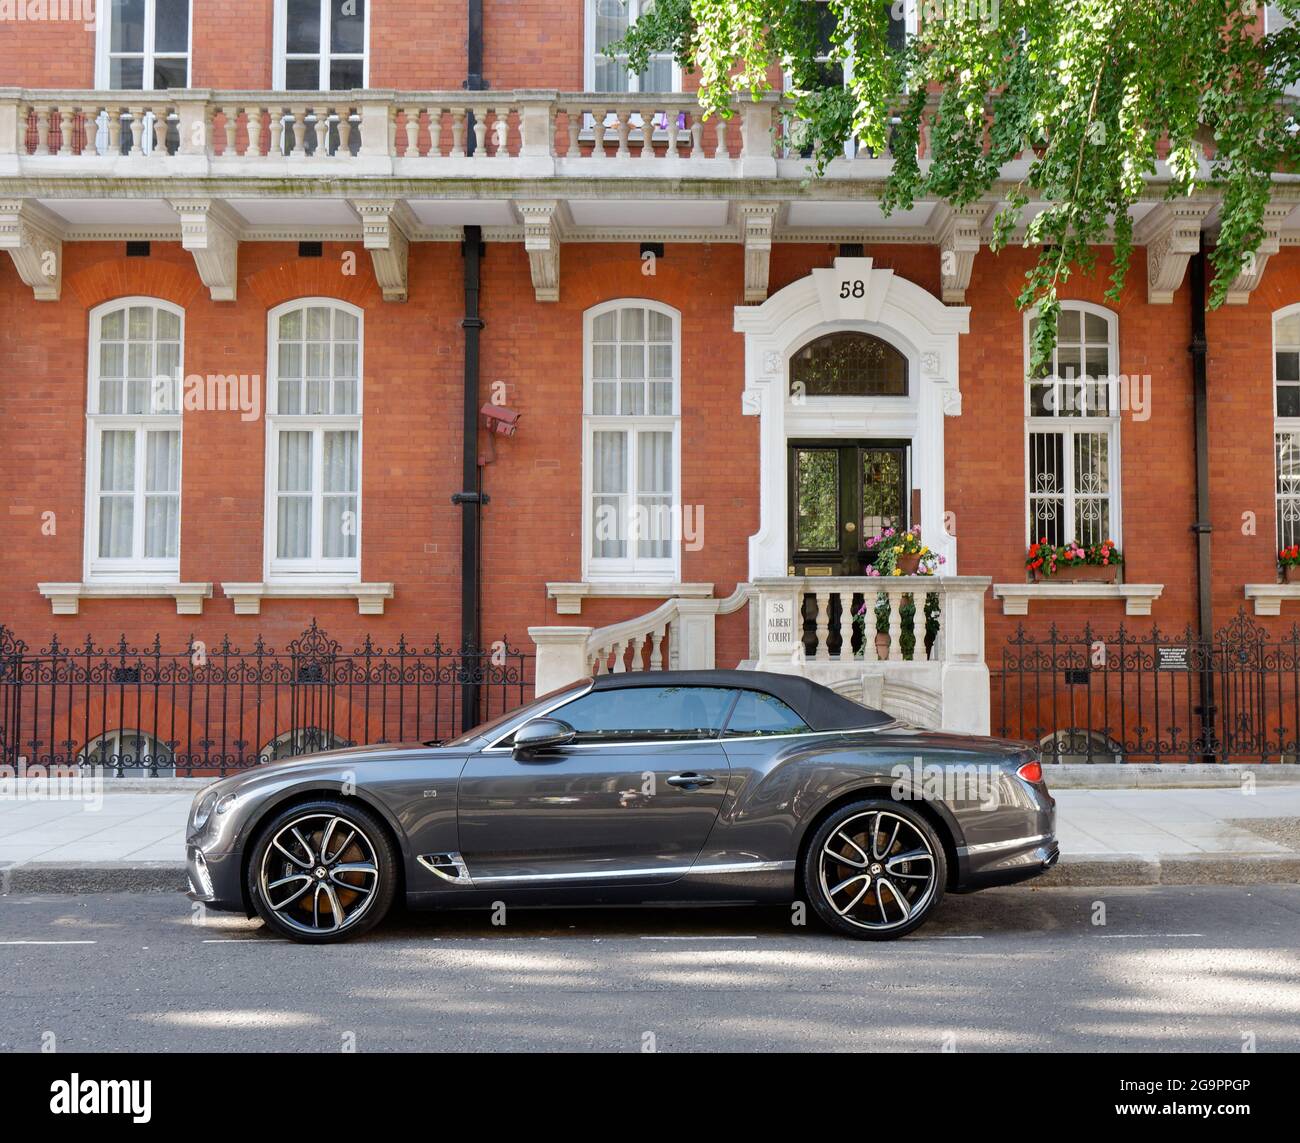 London, Greater London, England, Juli 17 2021: Cabriolet-Luxusauto auf der Prince Consort Road in South Kensington vor einem eleganten Anwesen. Stockfoto